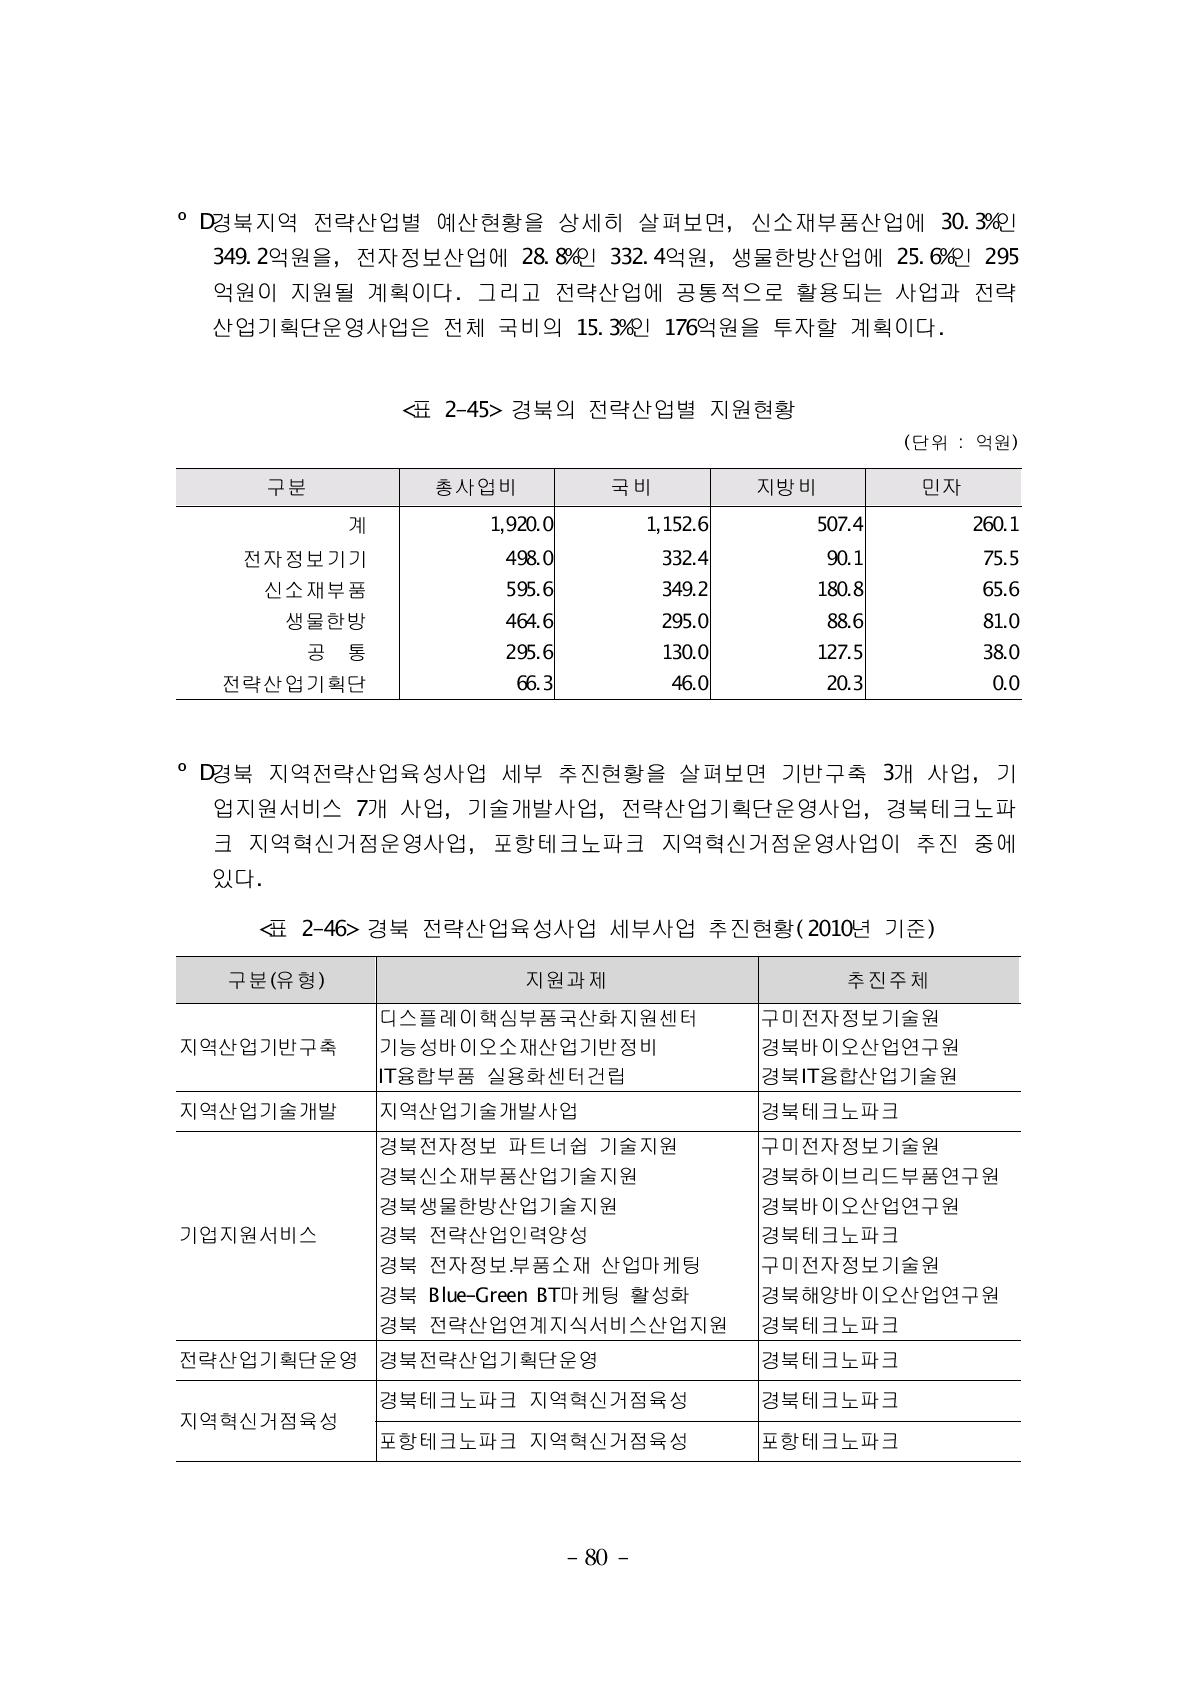 경북의 전략산업별 지원현황